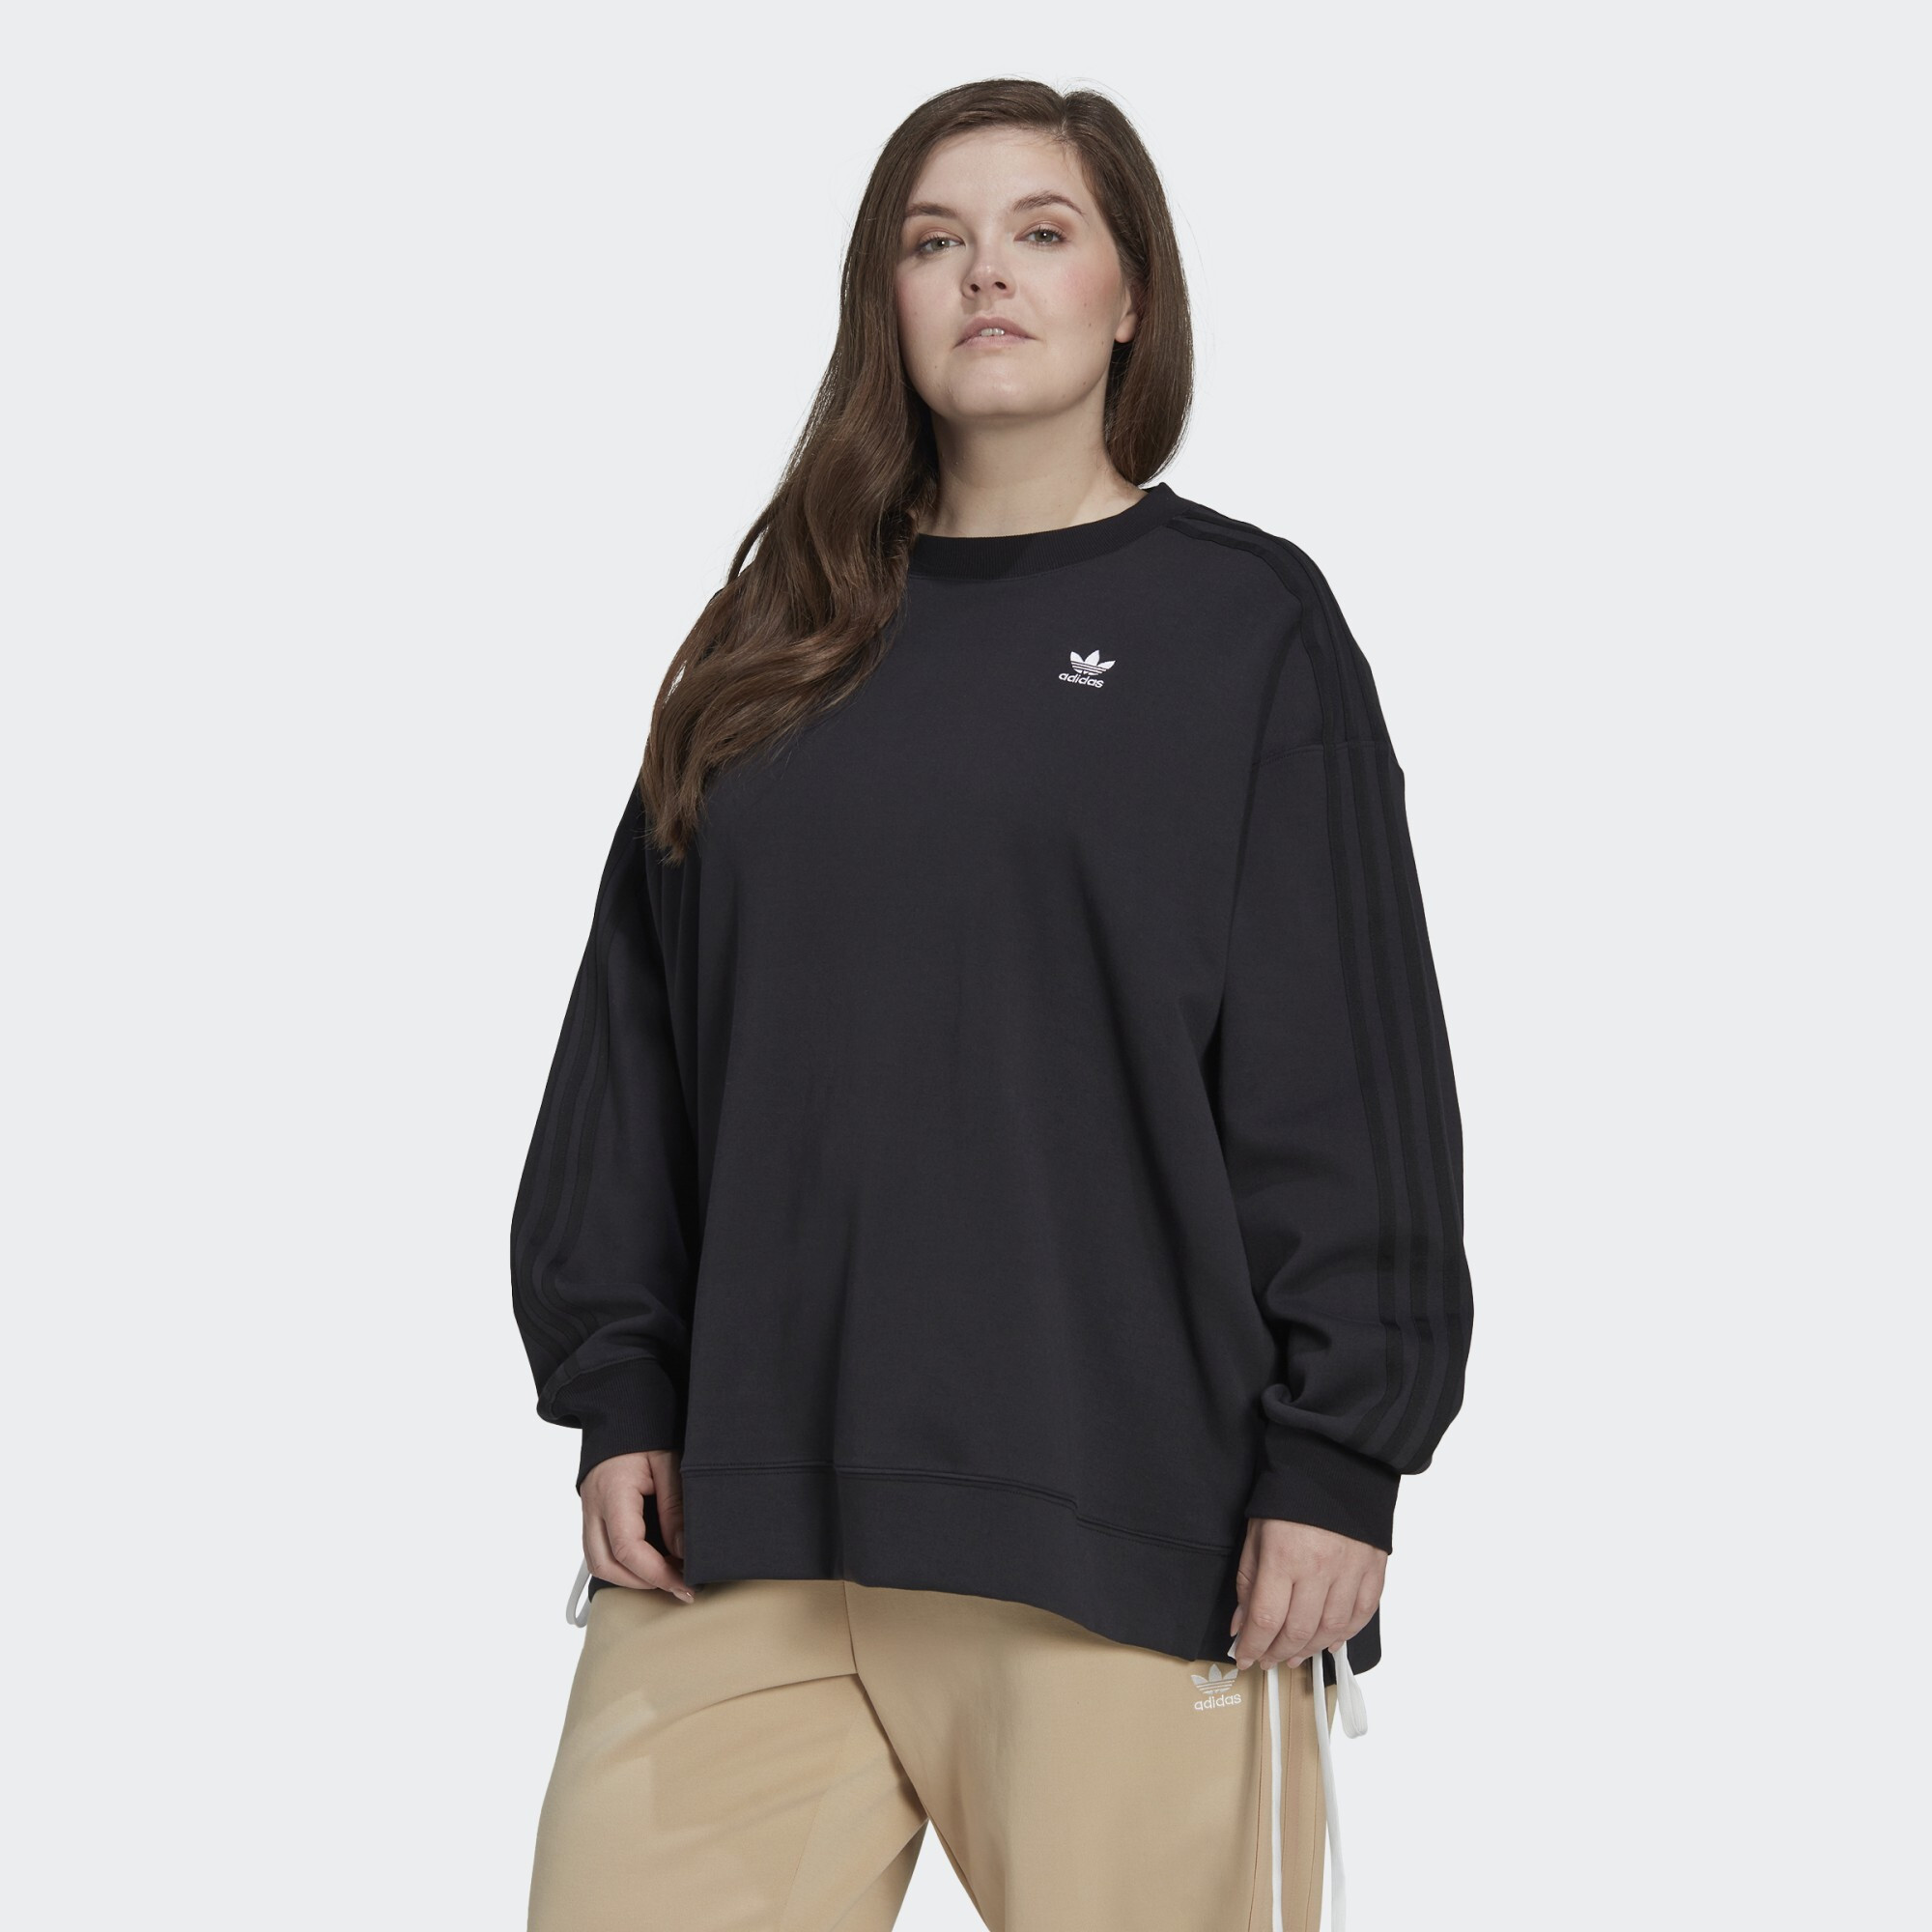 adidas Originals Always Original Laced Crew Sweatshirt (Plus Size) (9000122684_1469)